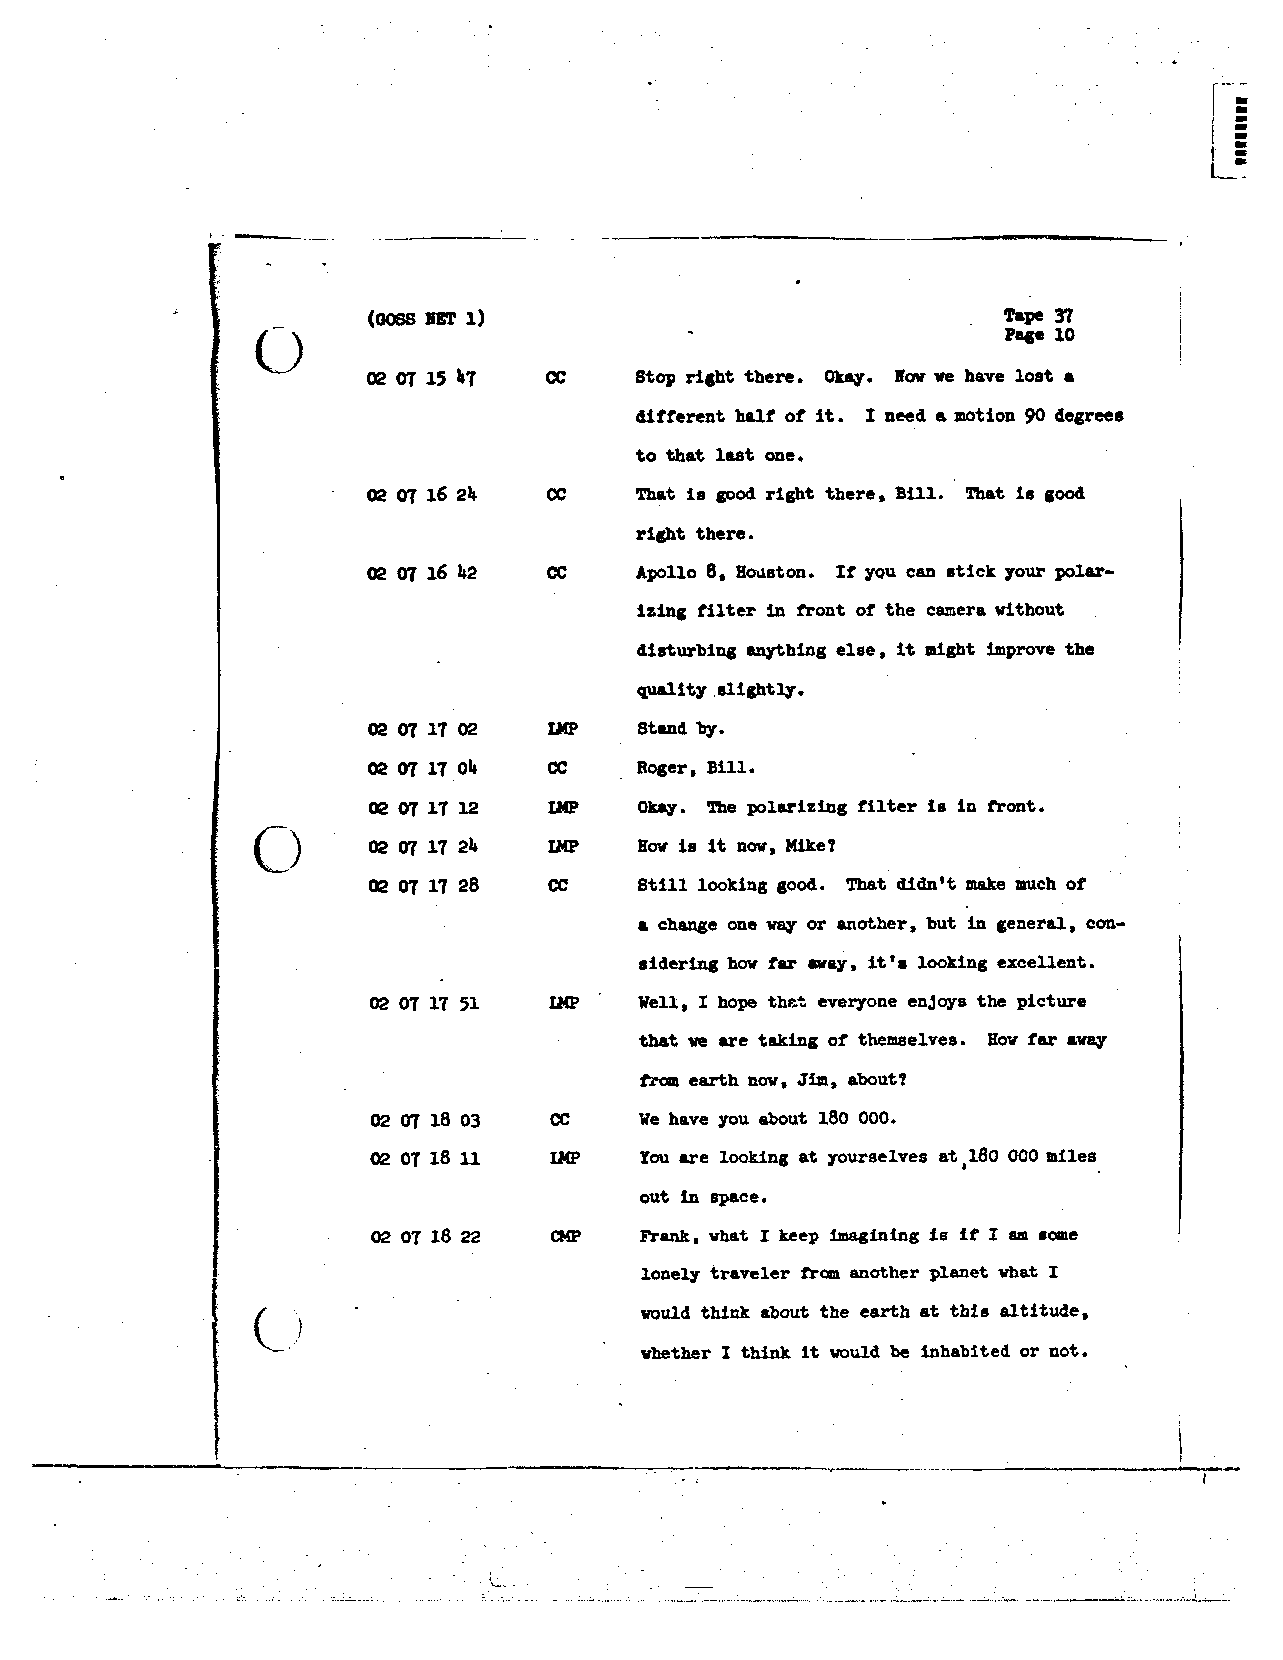 Page 292 of Apollo 8’s original transcript